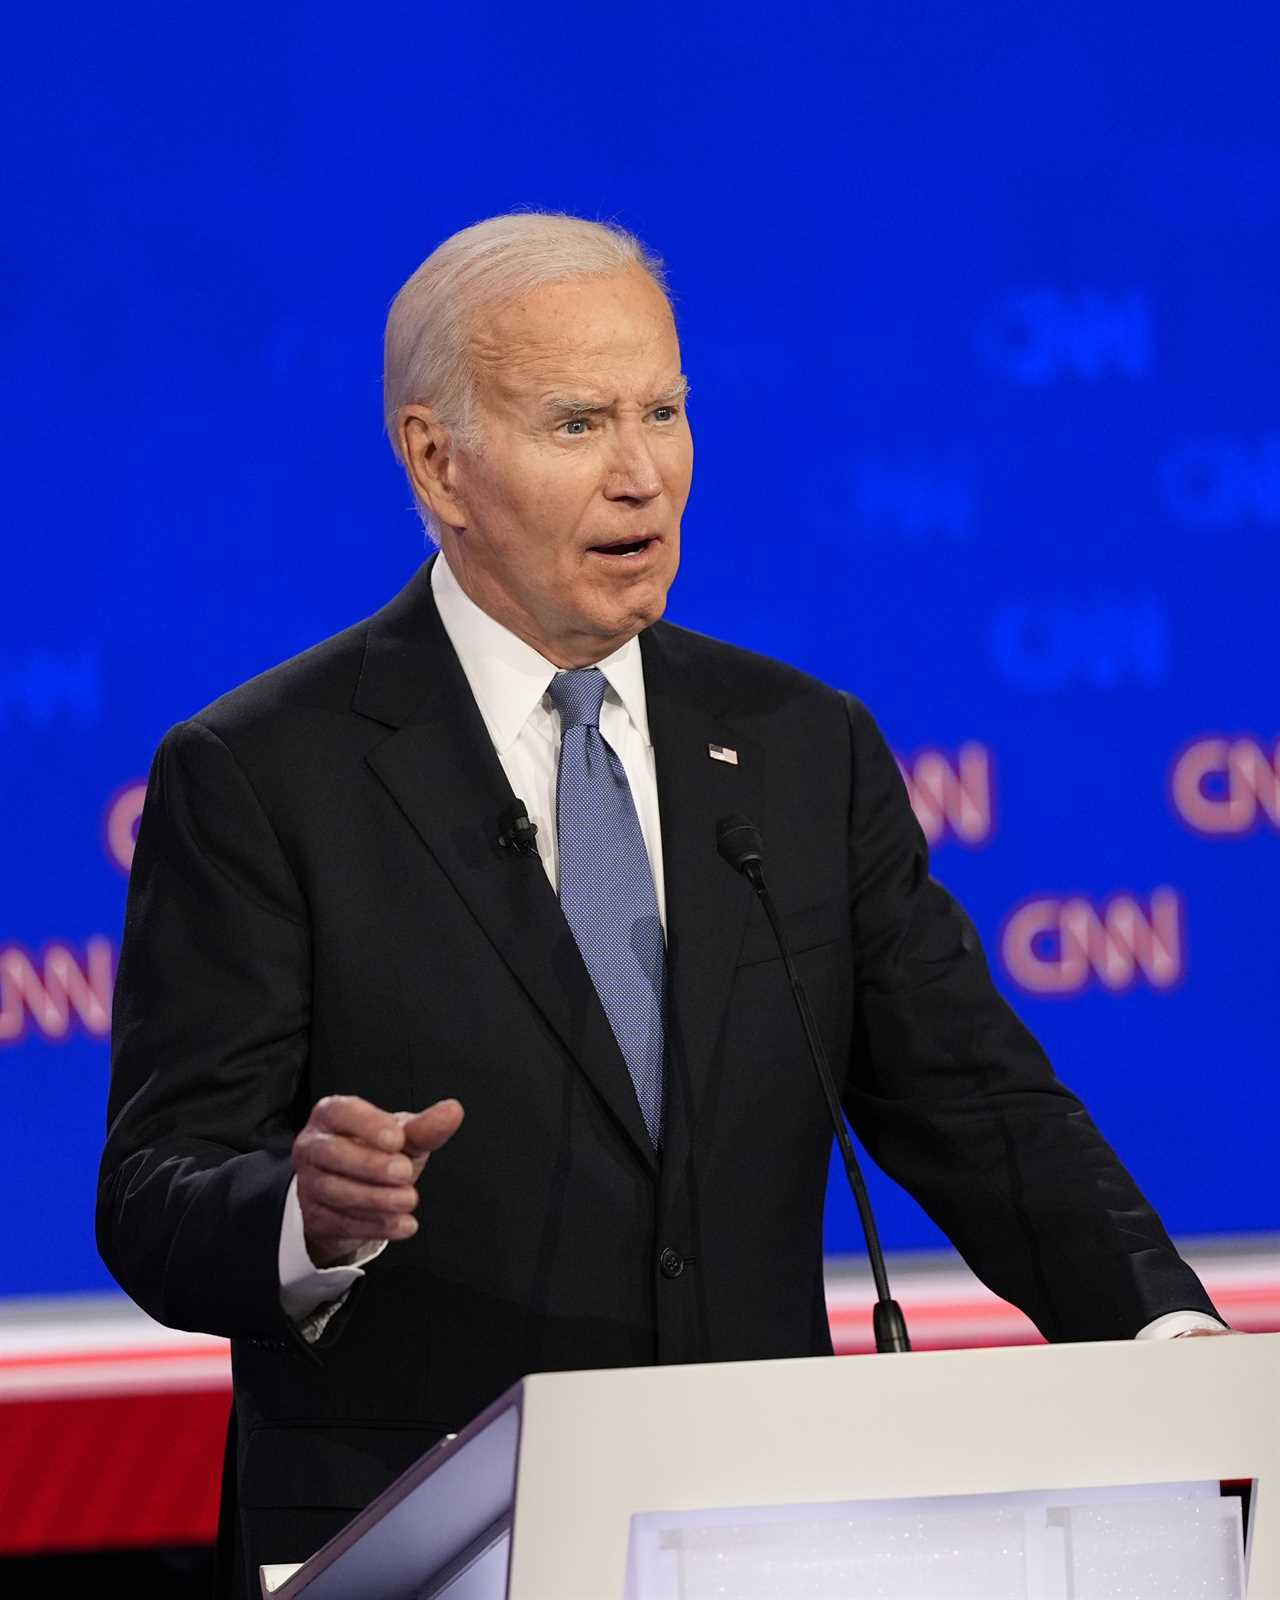 Biden faces ultimatum from top Democrats after disastrous debate